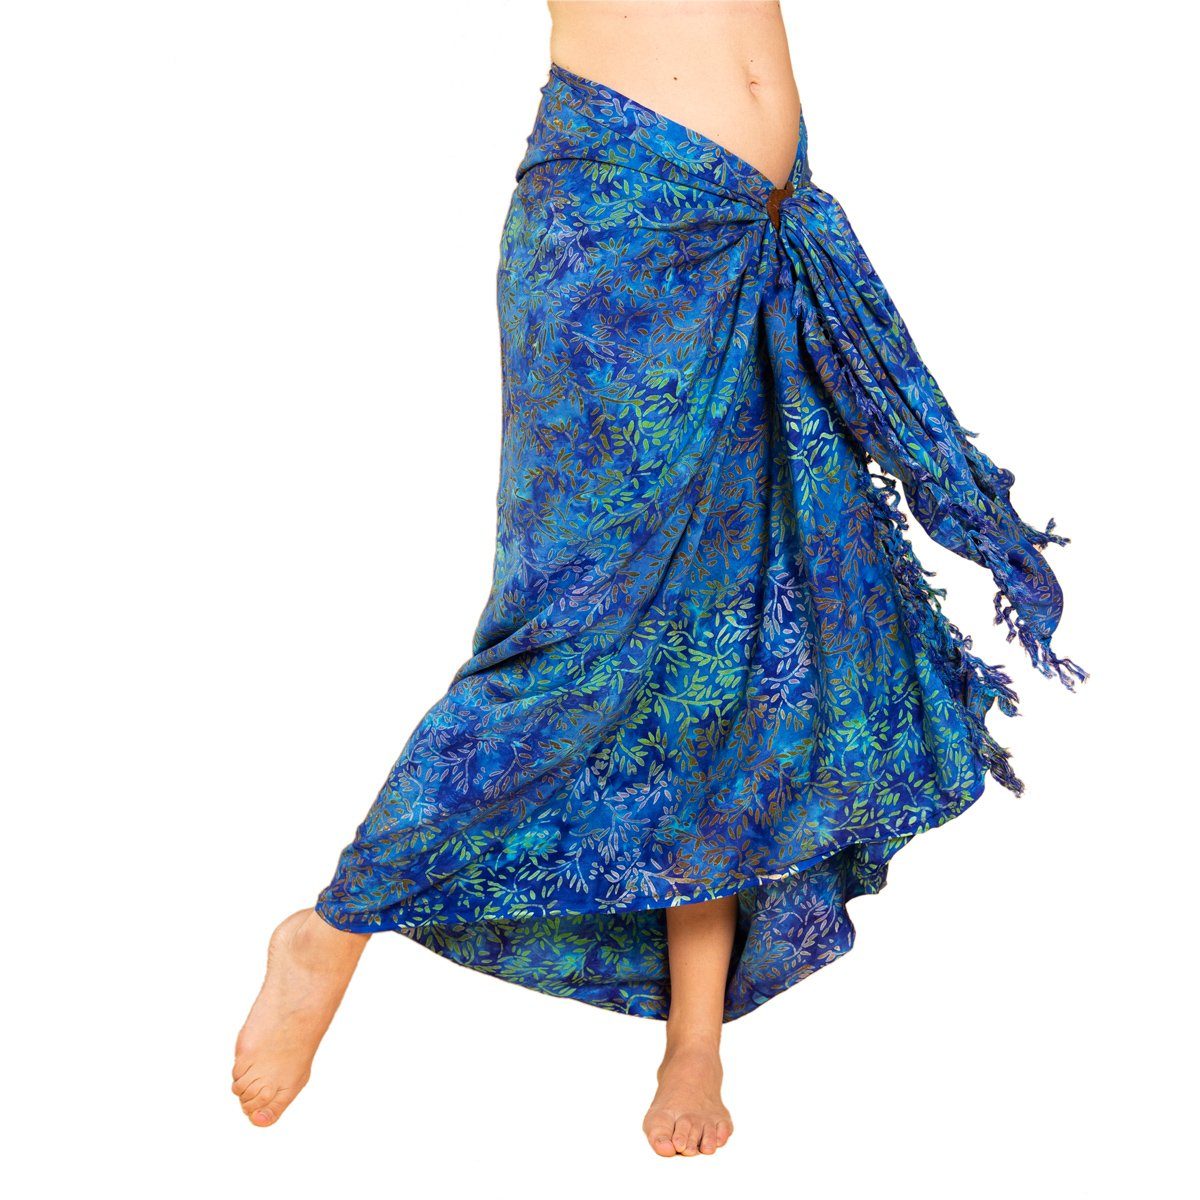 PANASIAM Pareo Sarong Wachsbatik Blautöne aus hochwertiger Viskose Strandtuch, Strandkleid Bikini Cover-up Tuch für den Strand Schultertuch Halstuch B109 green leaf